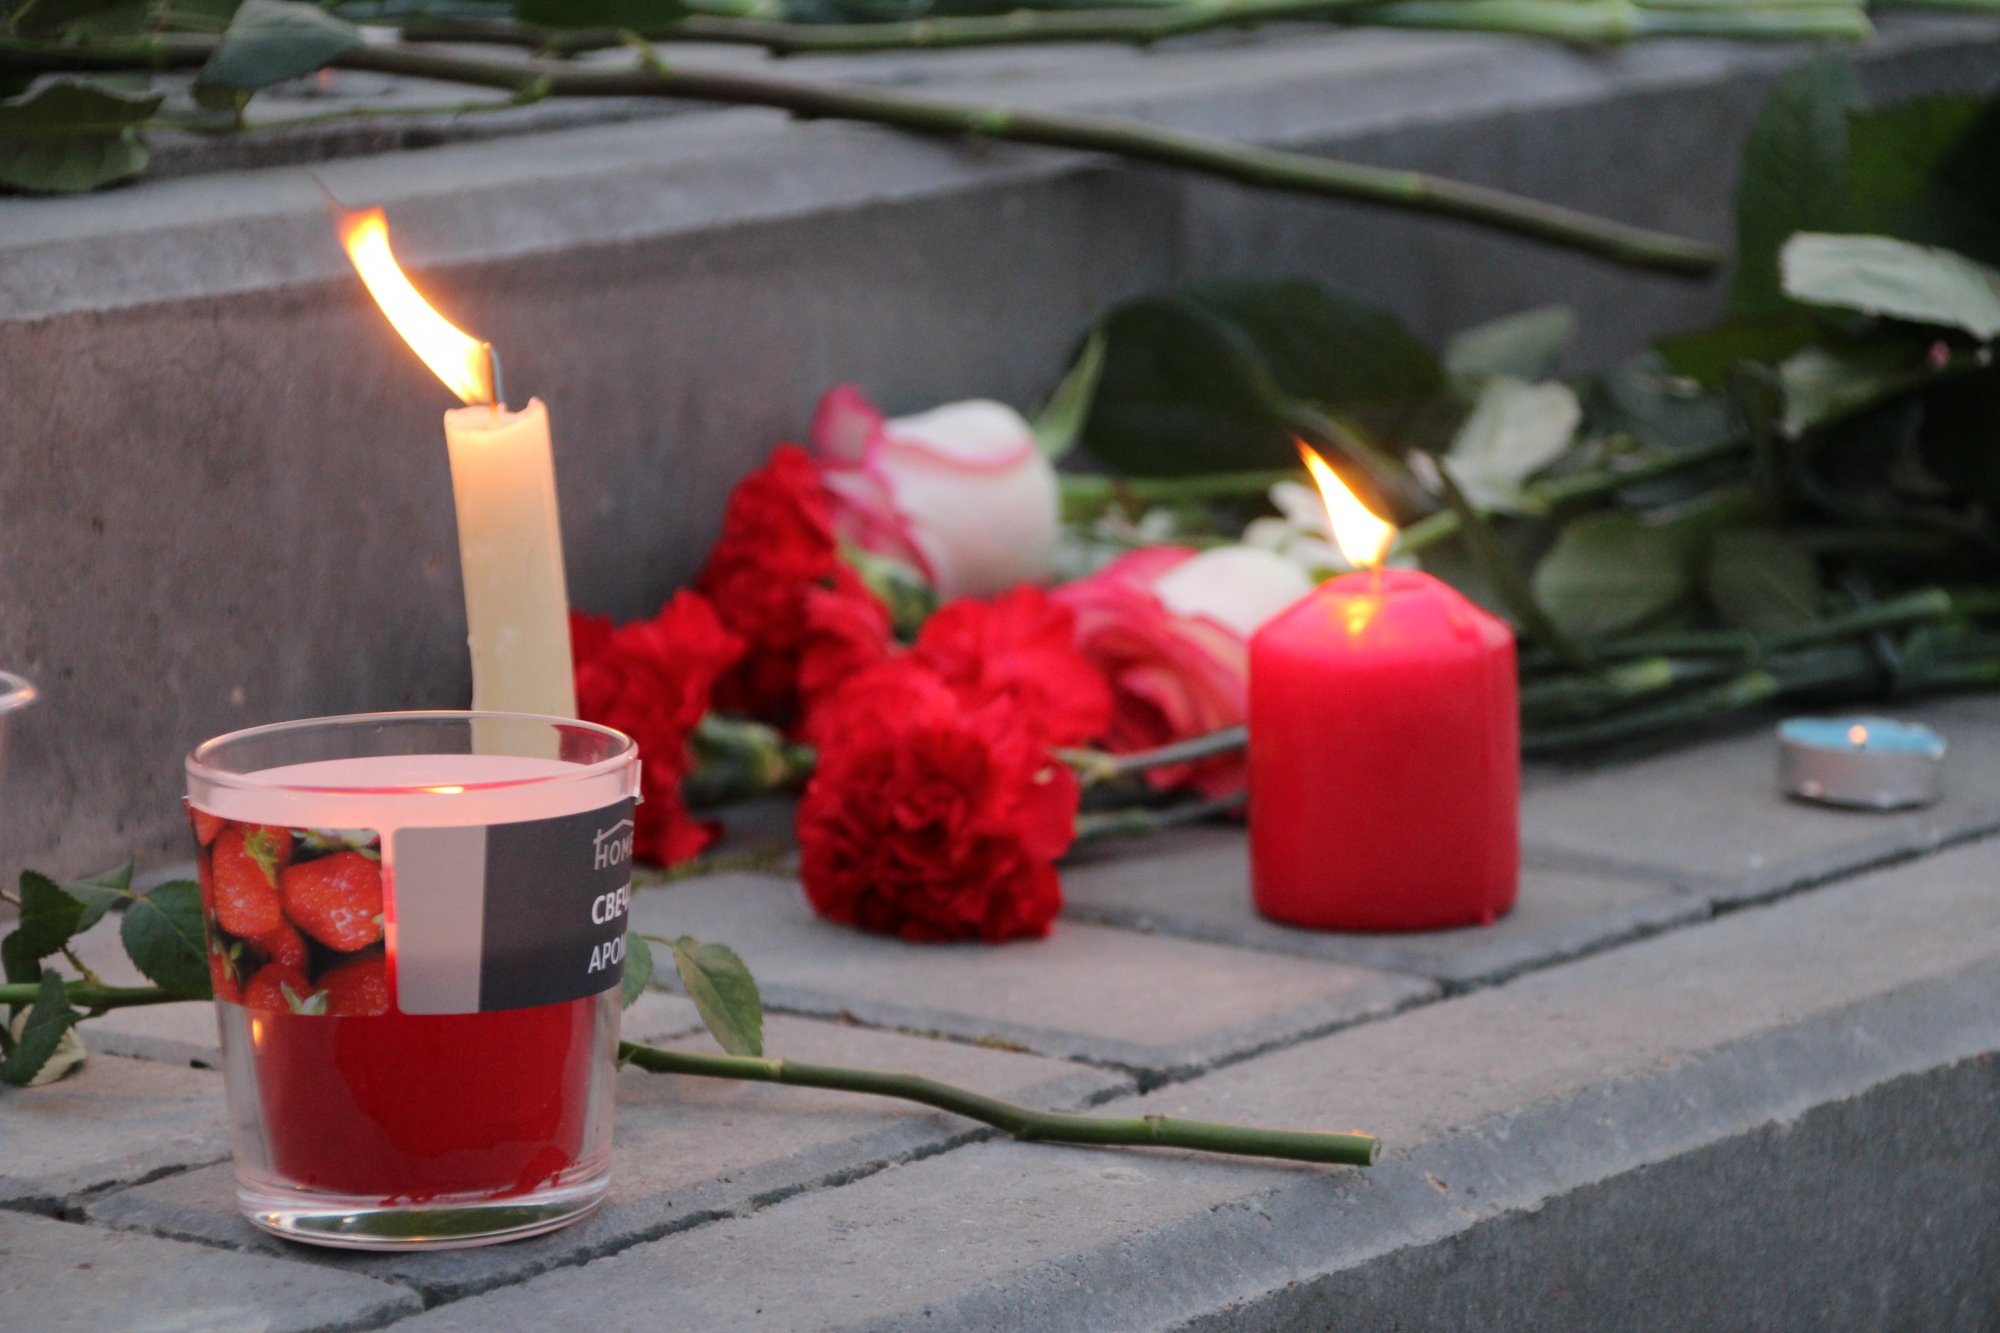 Челнинцы несут цветы и игрушки к мемориалу в память о погибших детях